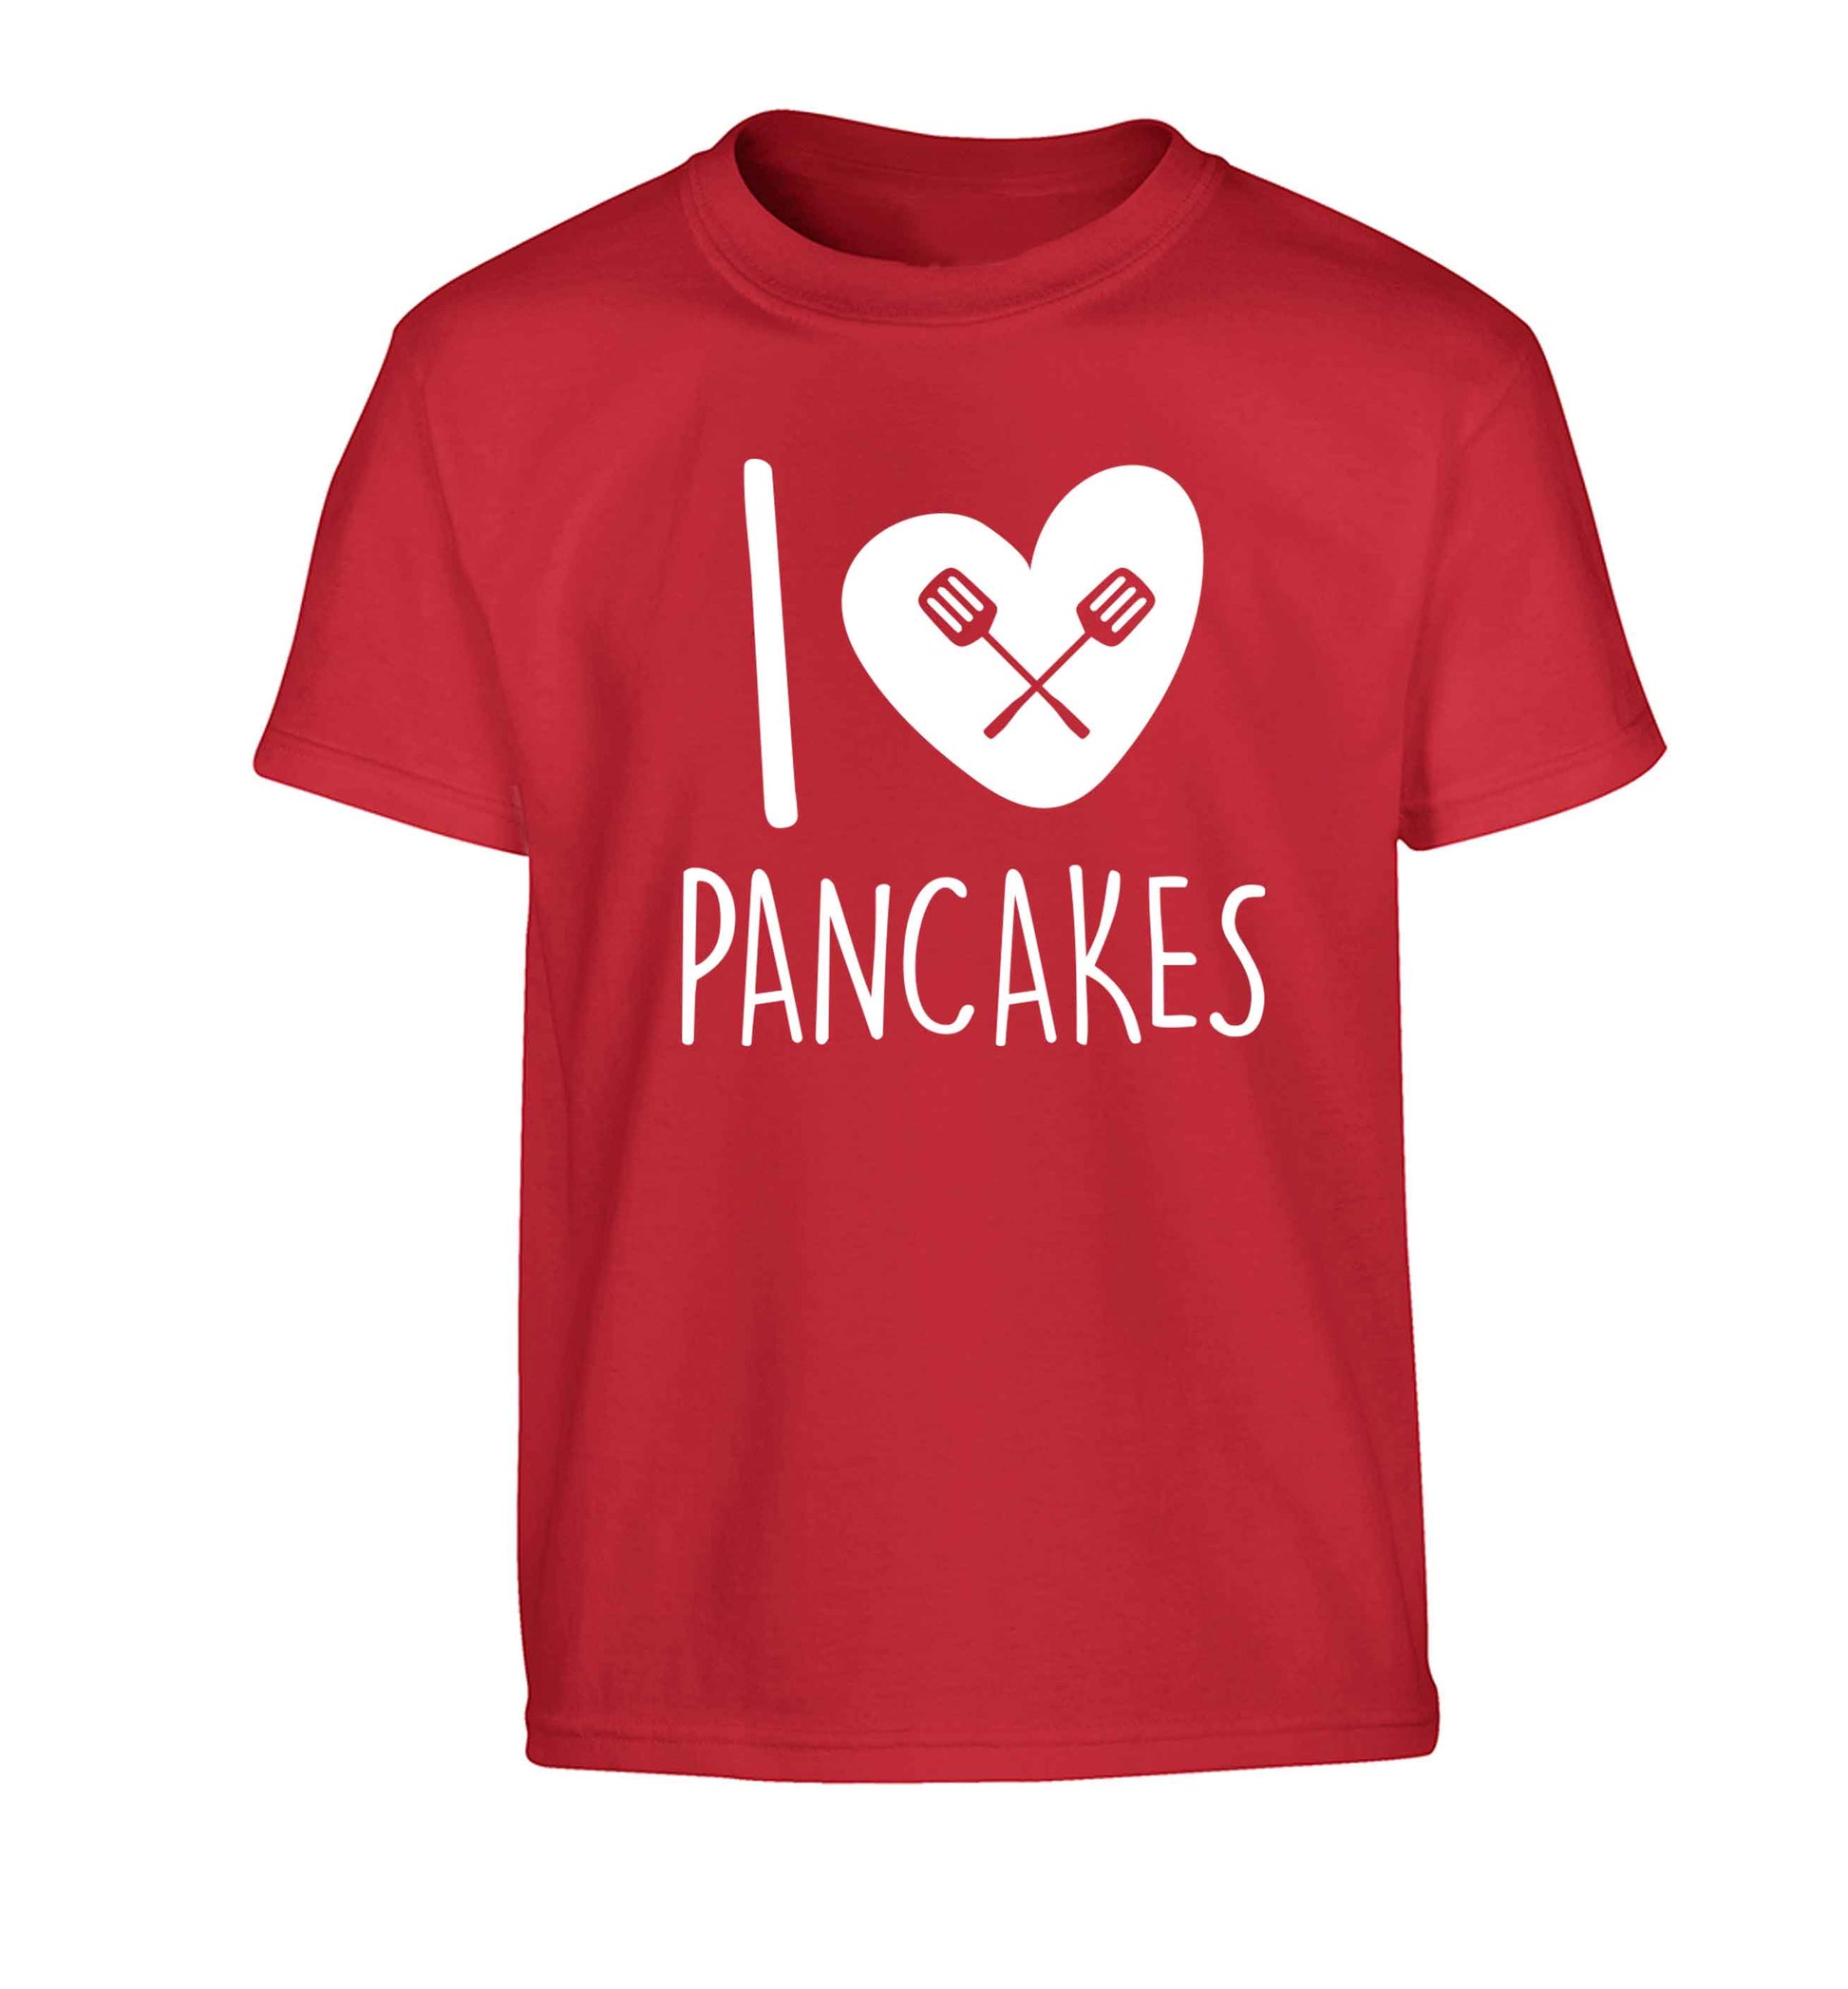 I love pancakes Children's red Tshirt 12-13 Years